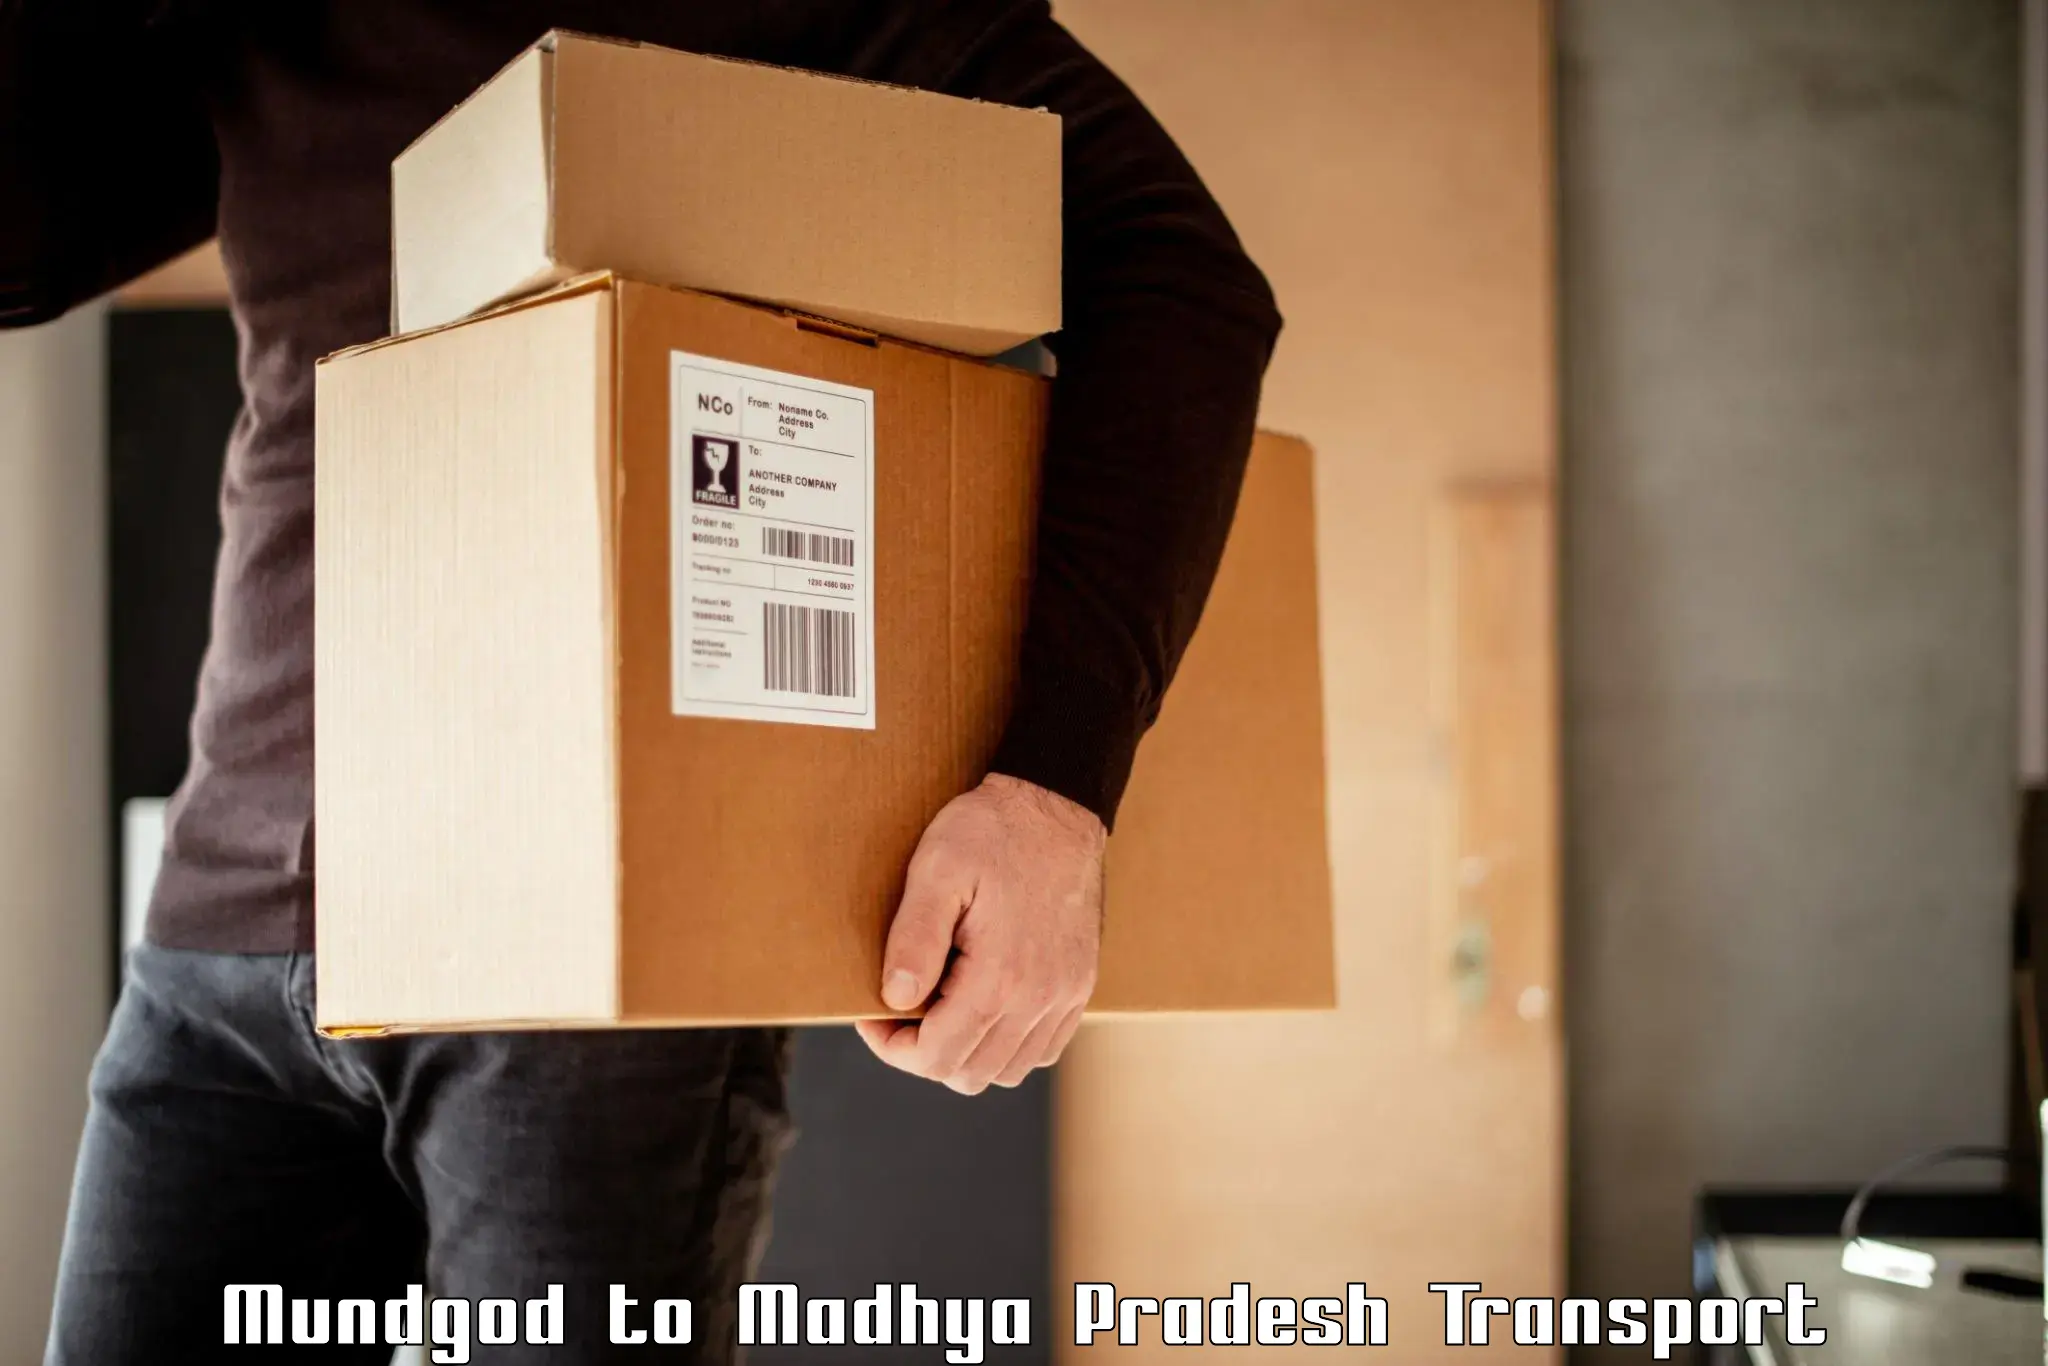 Shipping partner Mundgod to Pachore